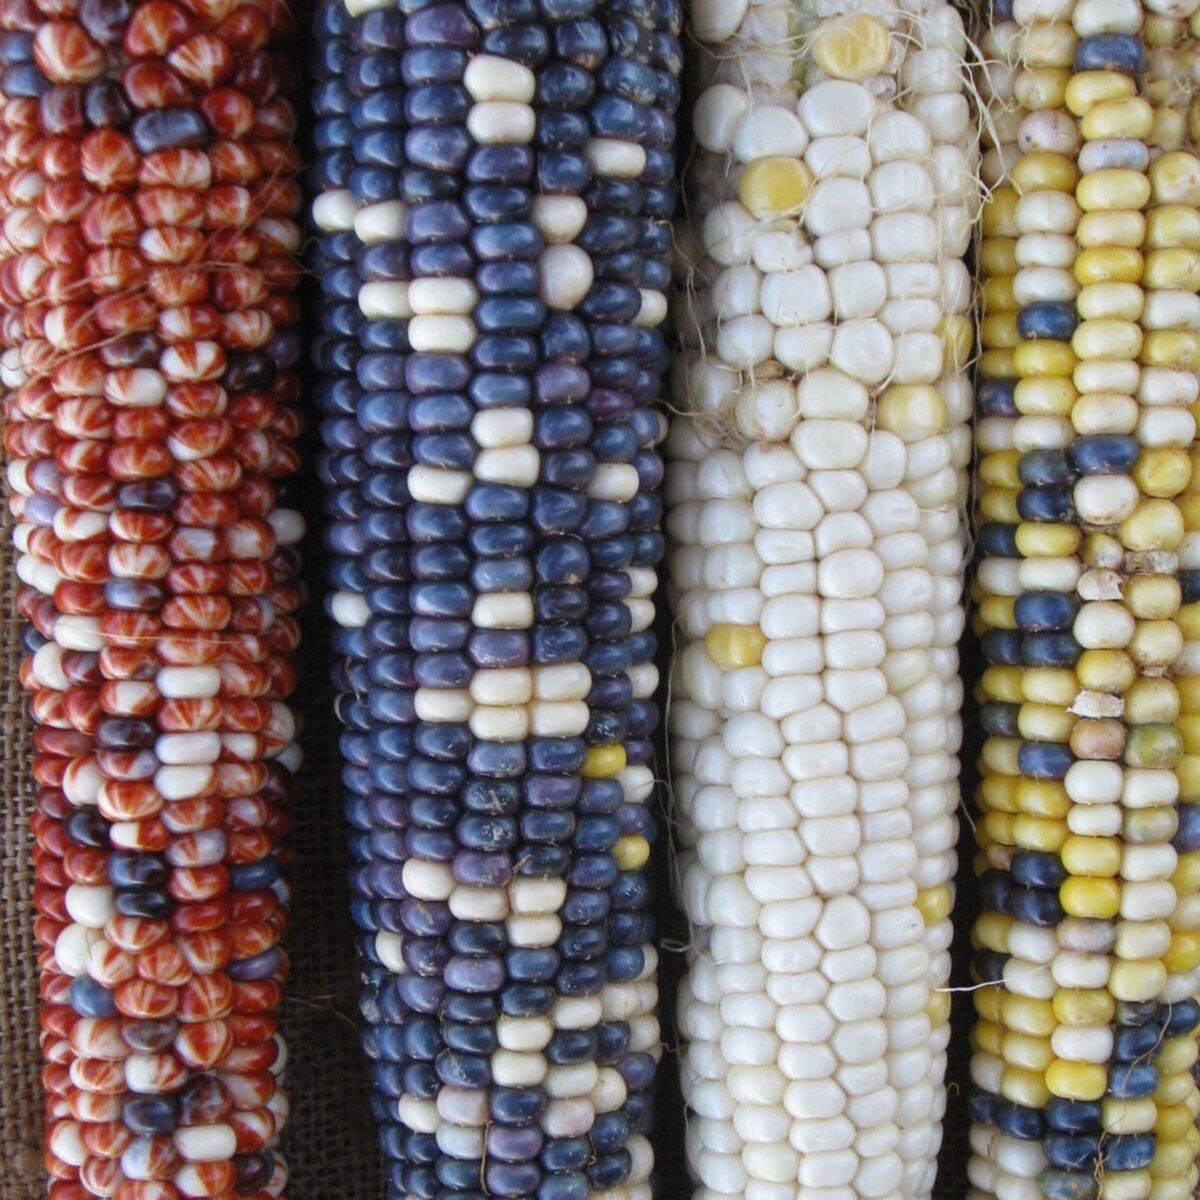 Casados Multicolor Corn. (Courtesy of Native Seeds/SEARCH)